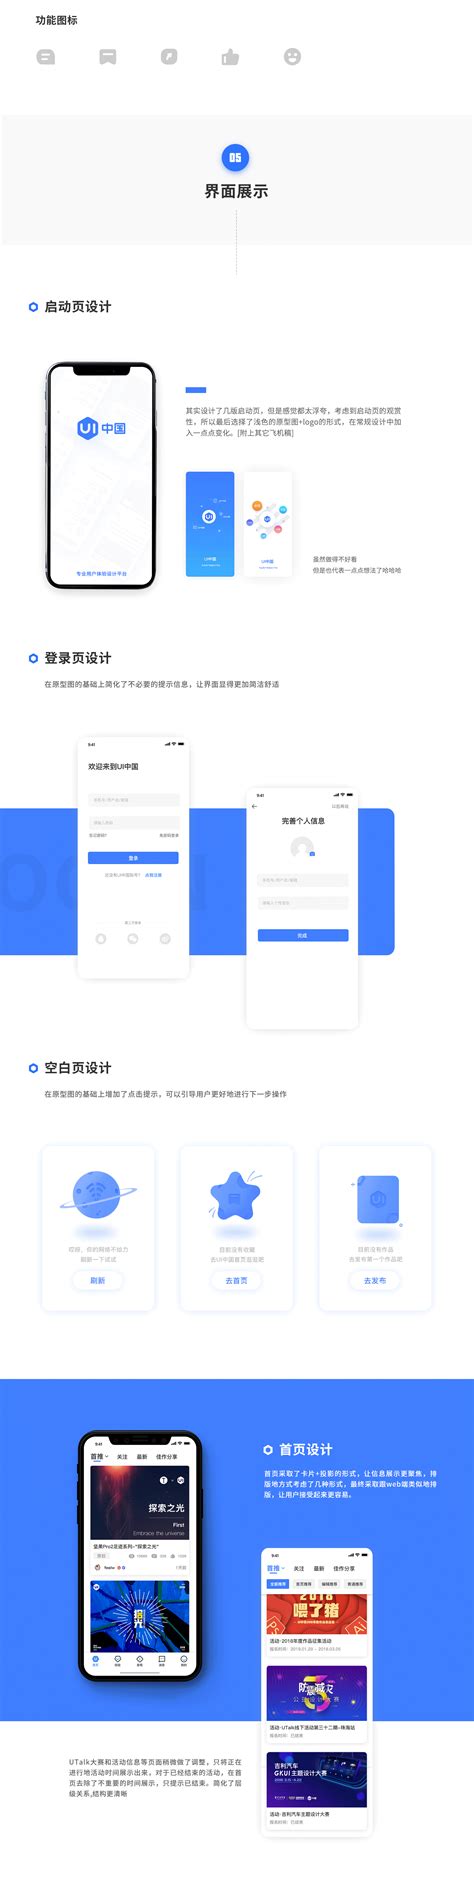 云视讯-中国移动 App Ranking and Store Data | data.ai